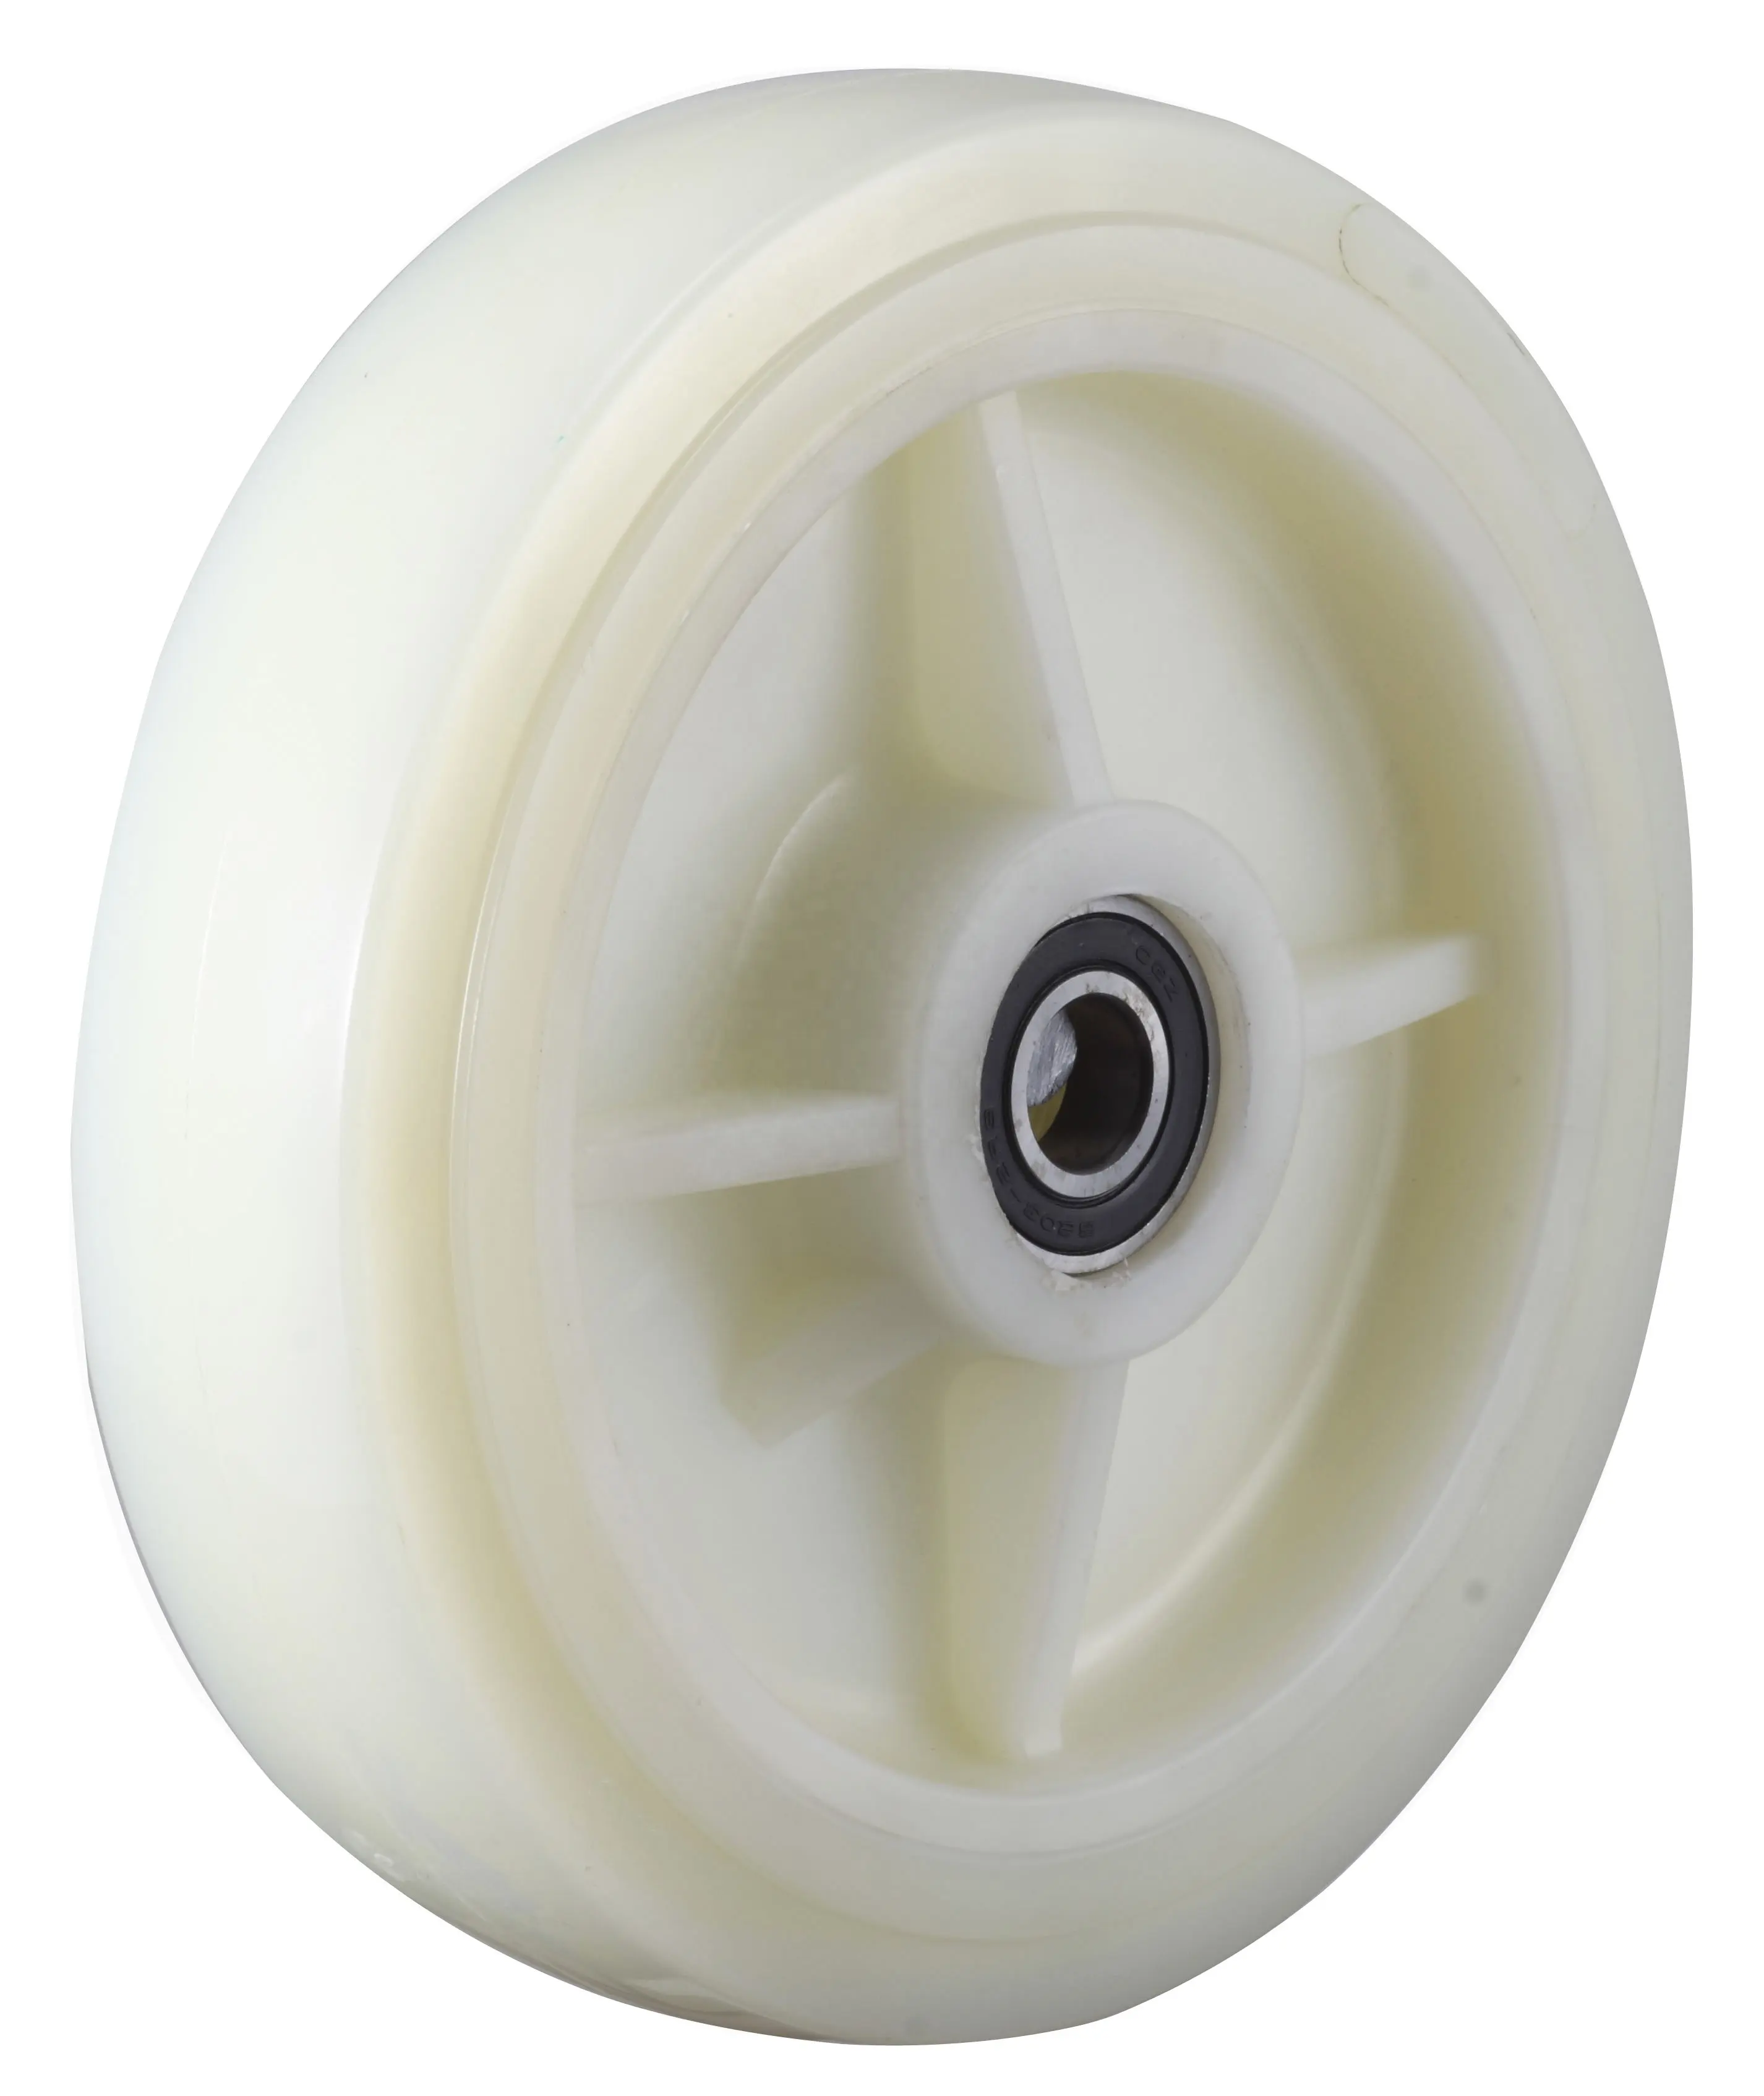 S-S petites roues à roulettes en Nylon, roulette robuste et haute résistance